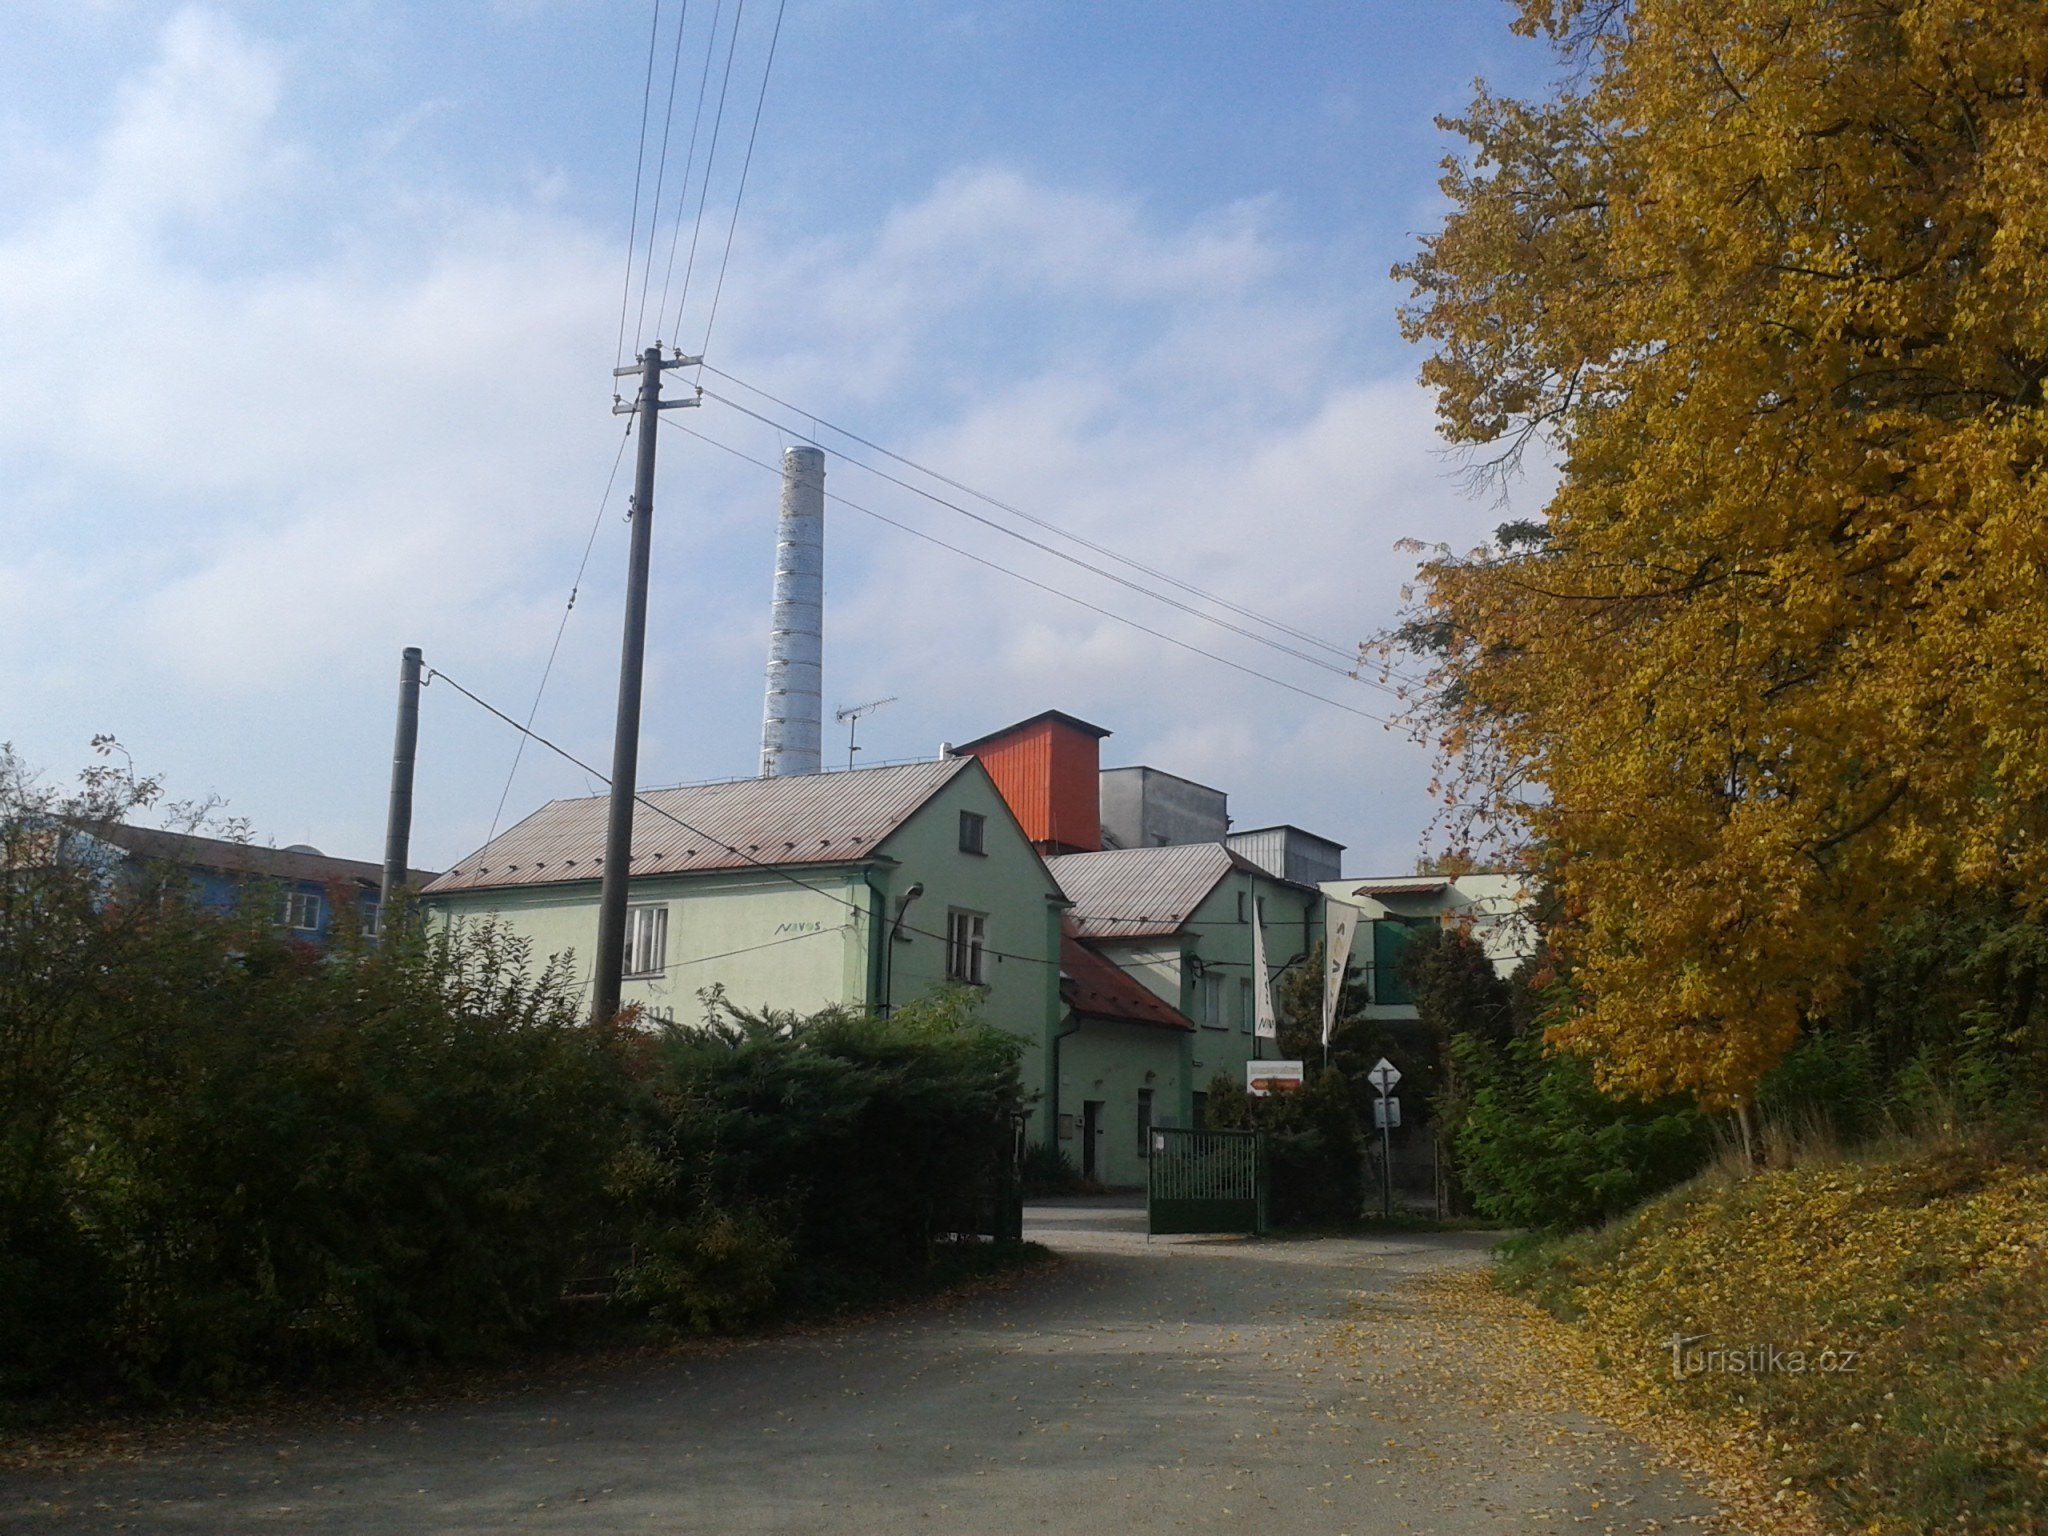 Zábřeh 的酿酒厂 - 我们不经过它，有一条狭窄的小路